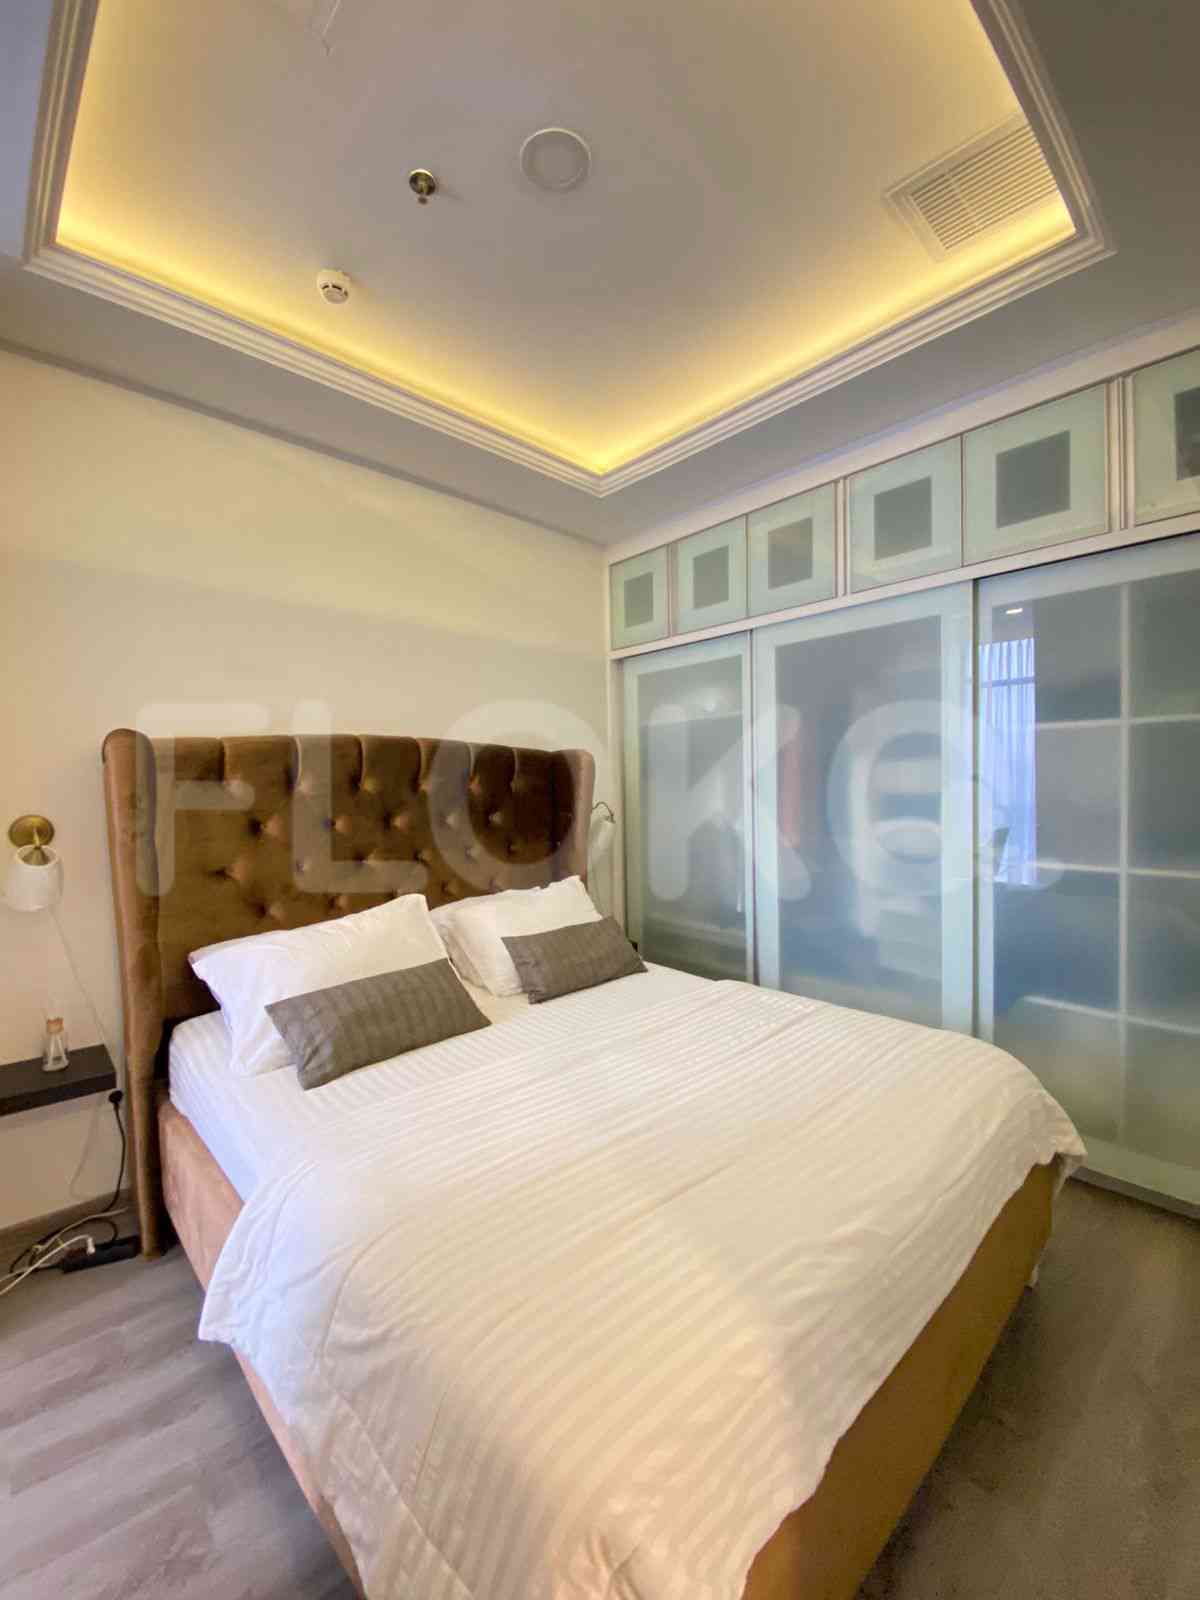 2 Bedroom on 14th Floor for Rent in Sudirman Suites Jakarta - fsu321 3